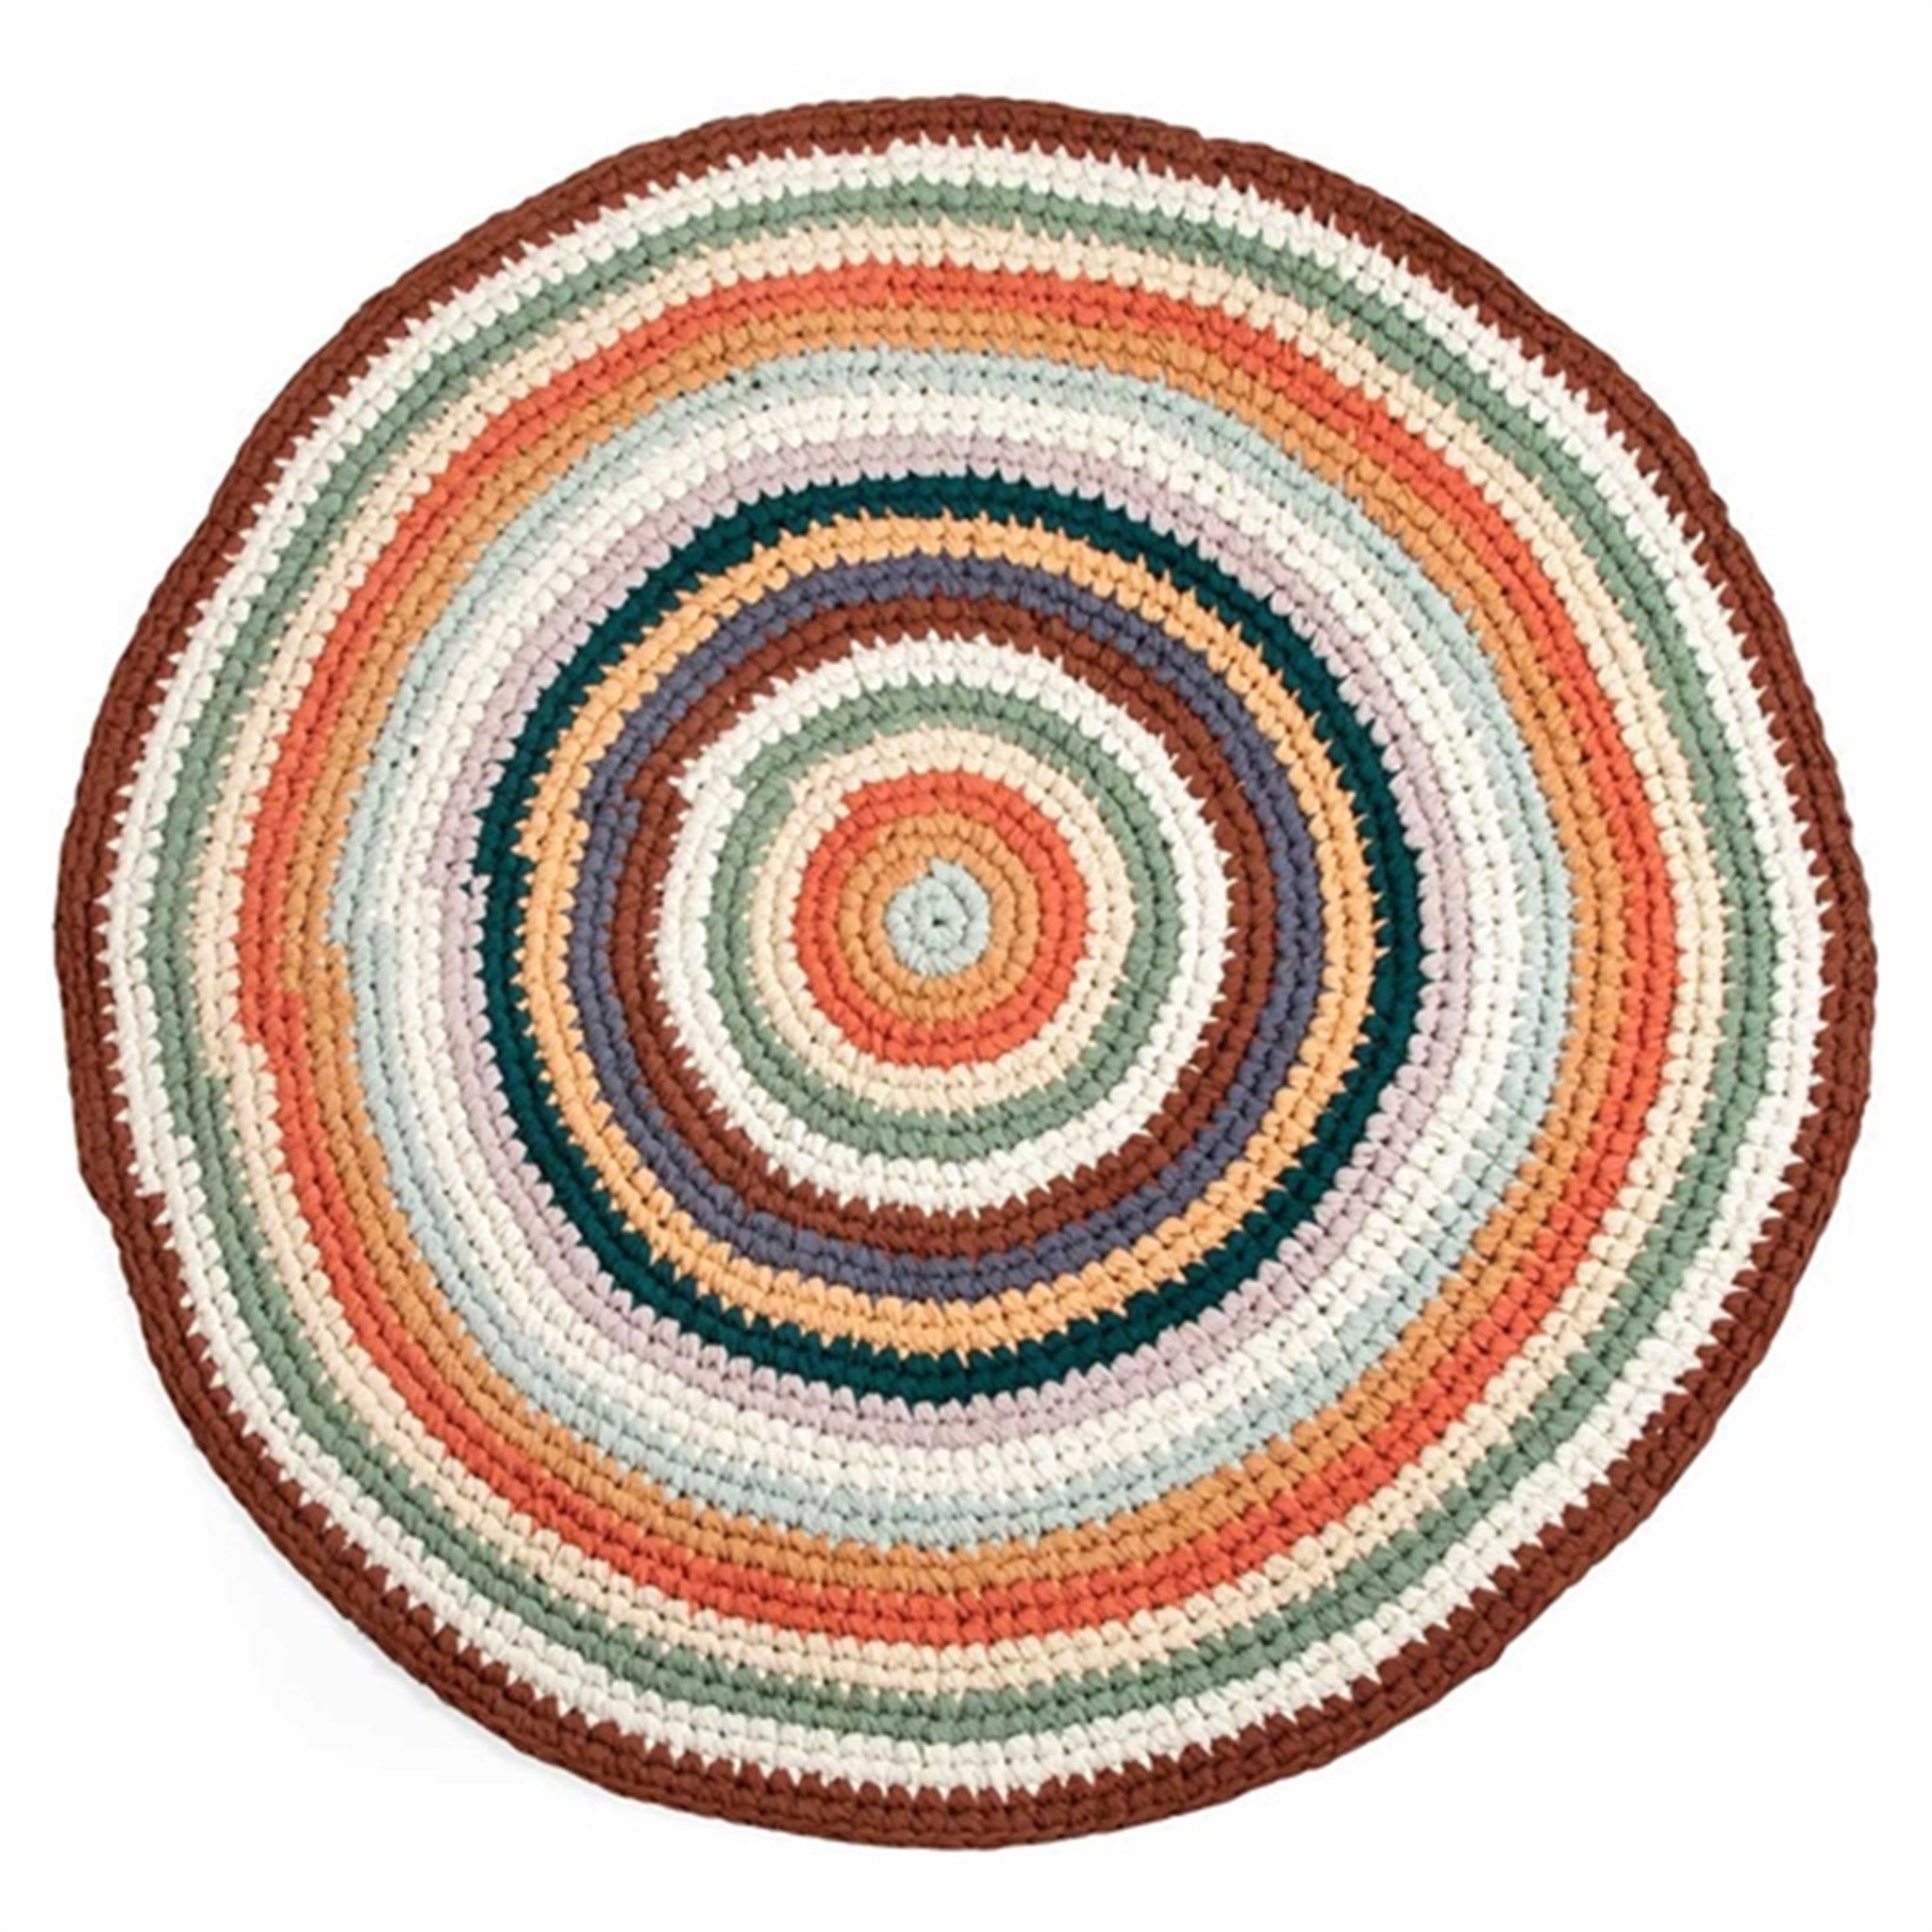 Sebra Crochet Floor Mat Mixed Colors